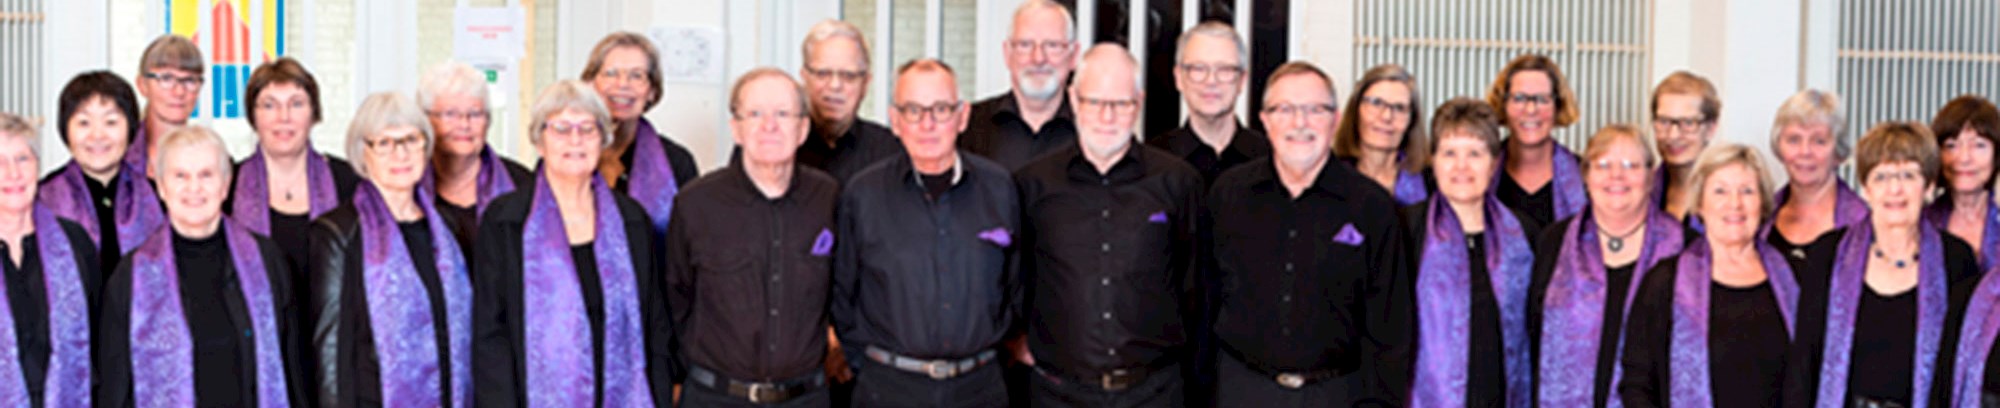 FOF Sønderjylland Danebodkoret kor af mennesker klædt i sort